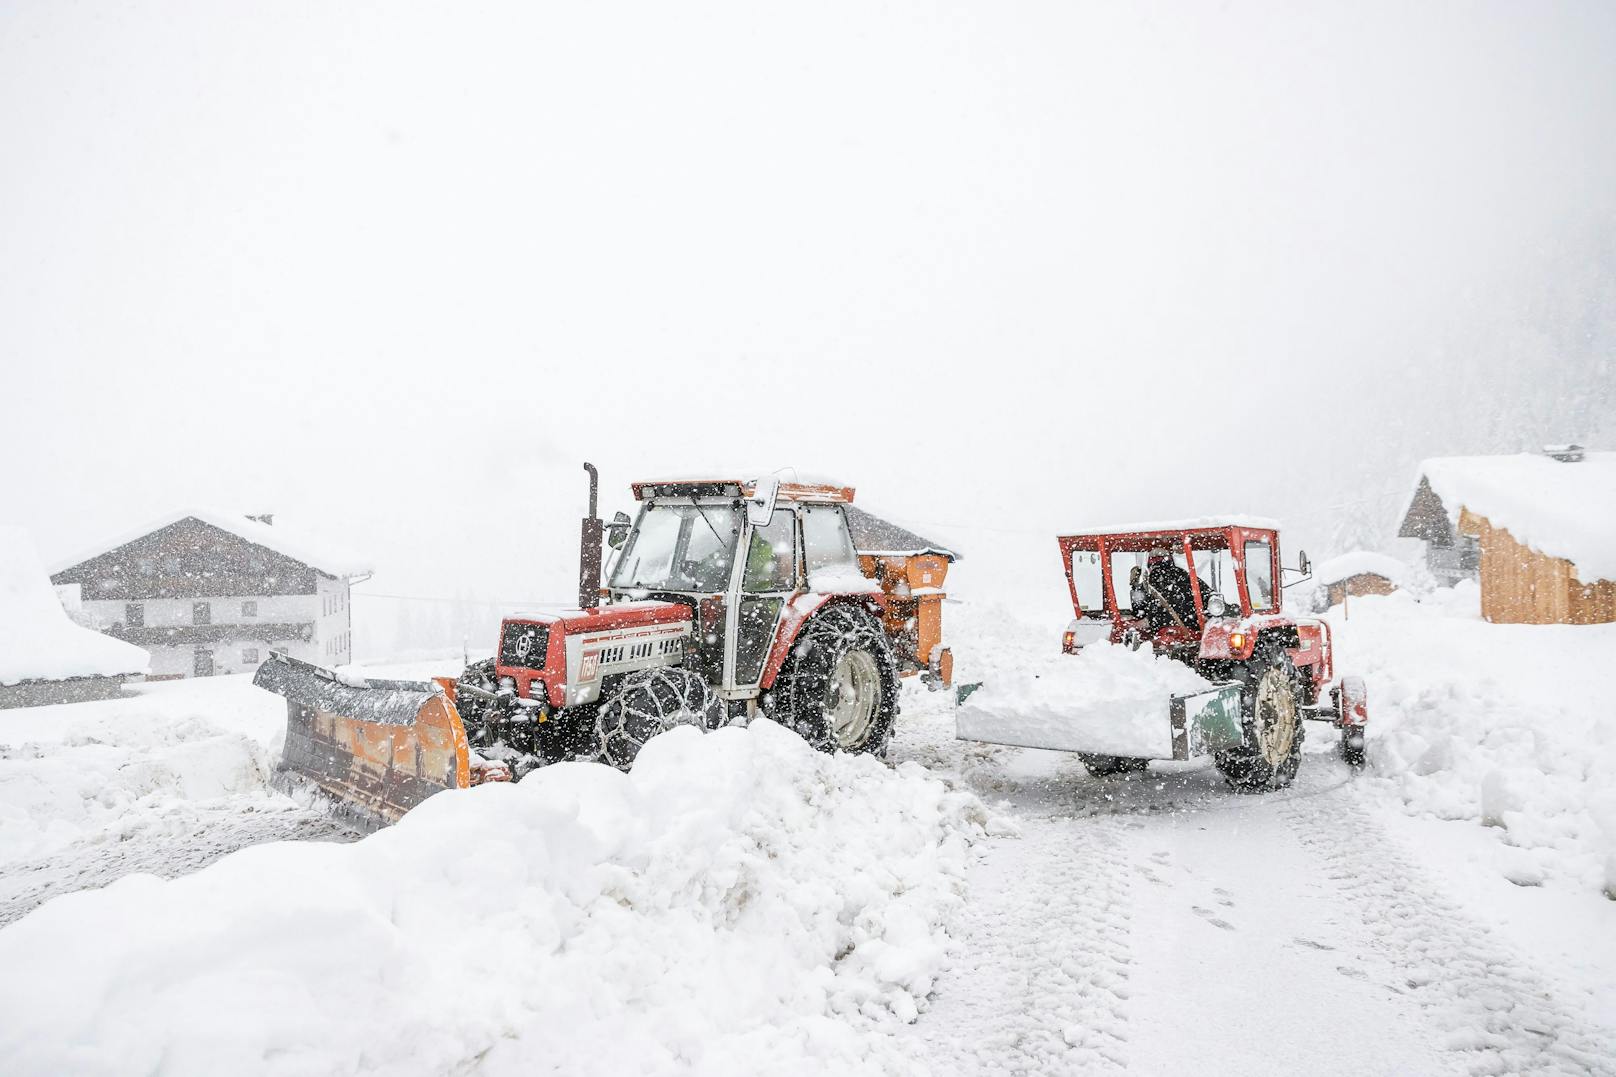 Schneesituation und Straßenräumung in Kals am Großglockner aufgenommen am Sonntag, 6. Dezember 2020, in Osttirol.